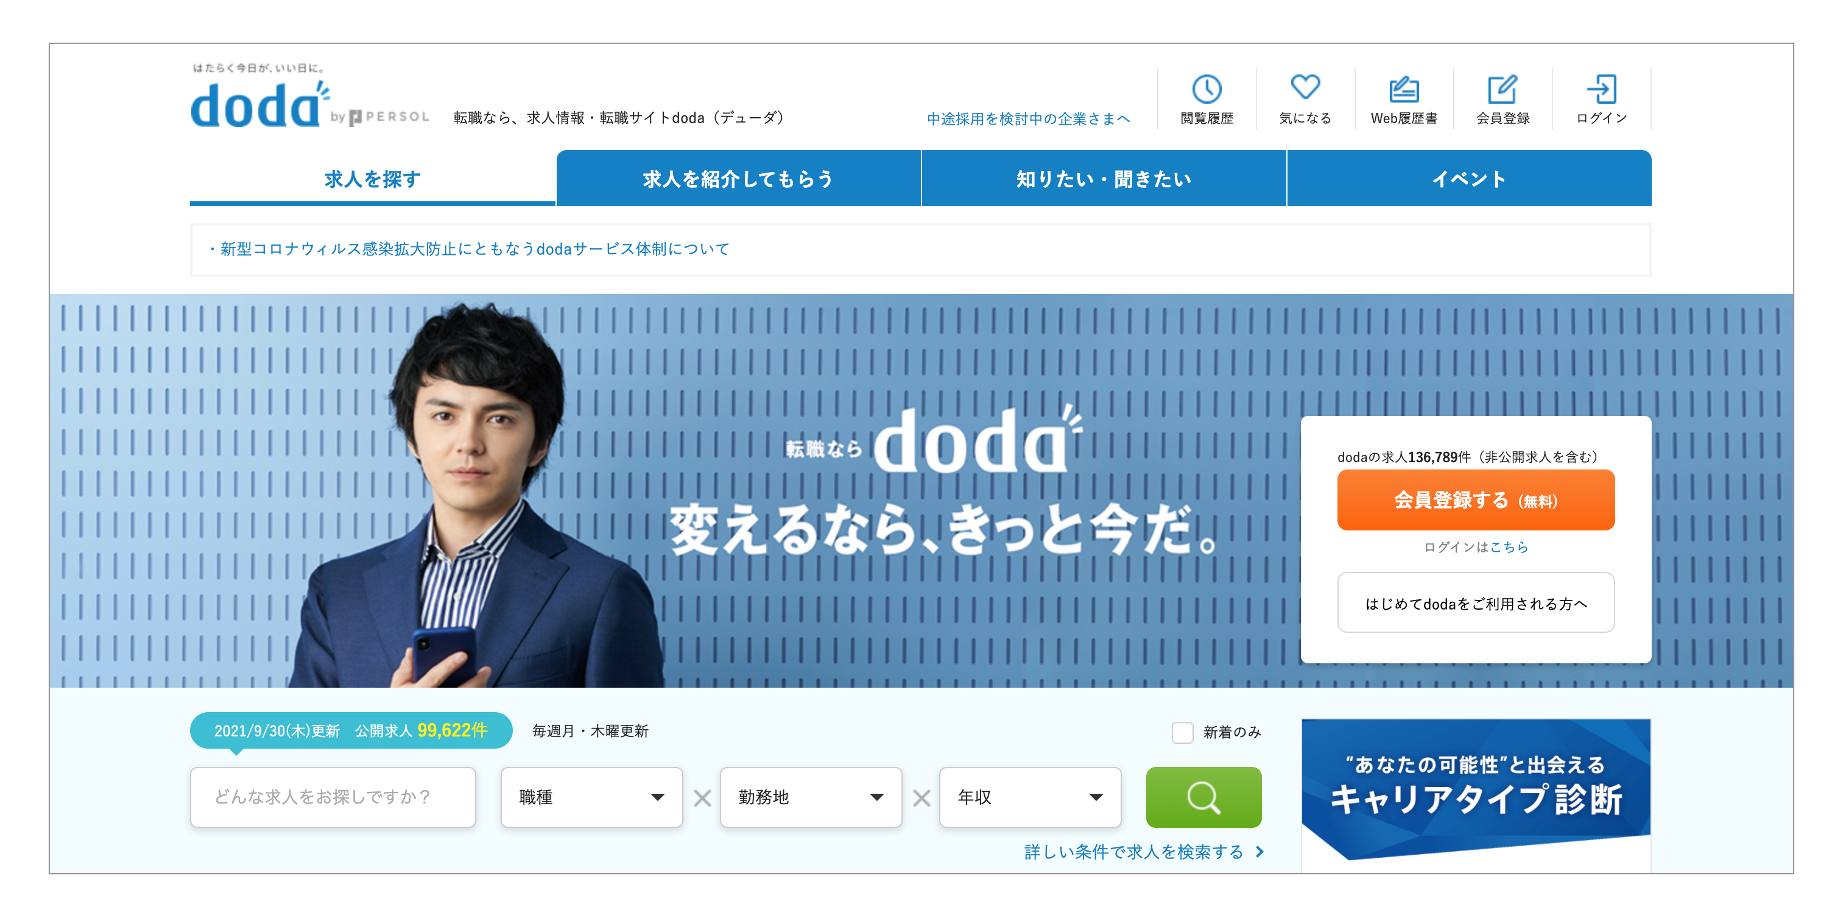 おすすめの転職サイト「doda」